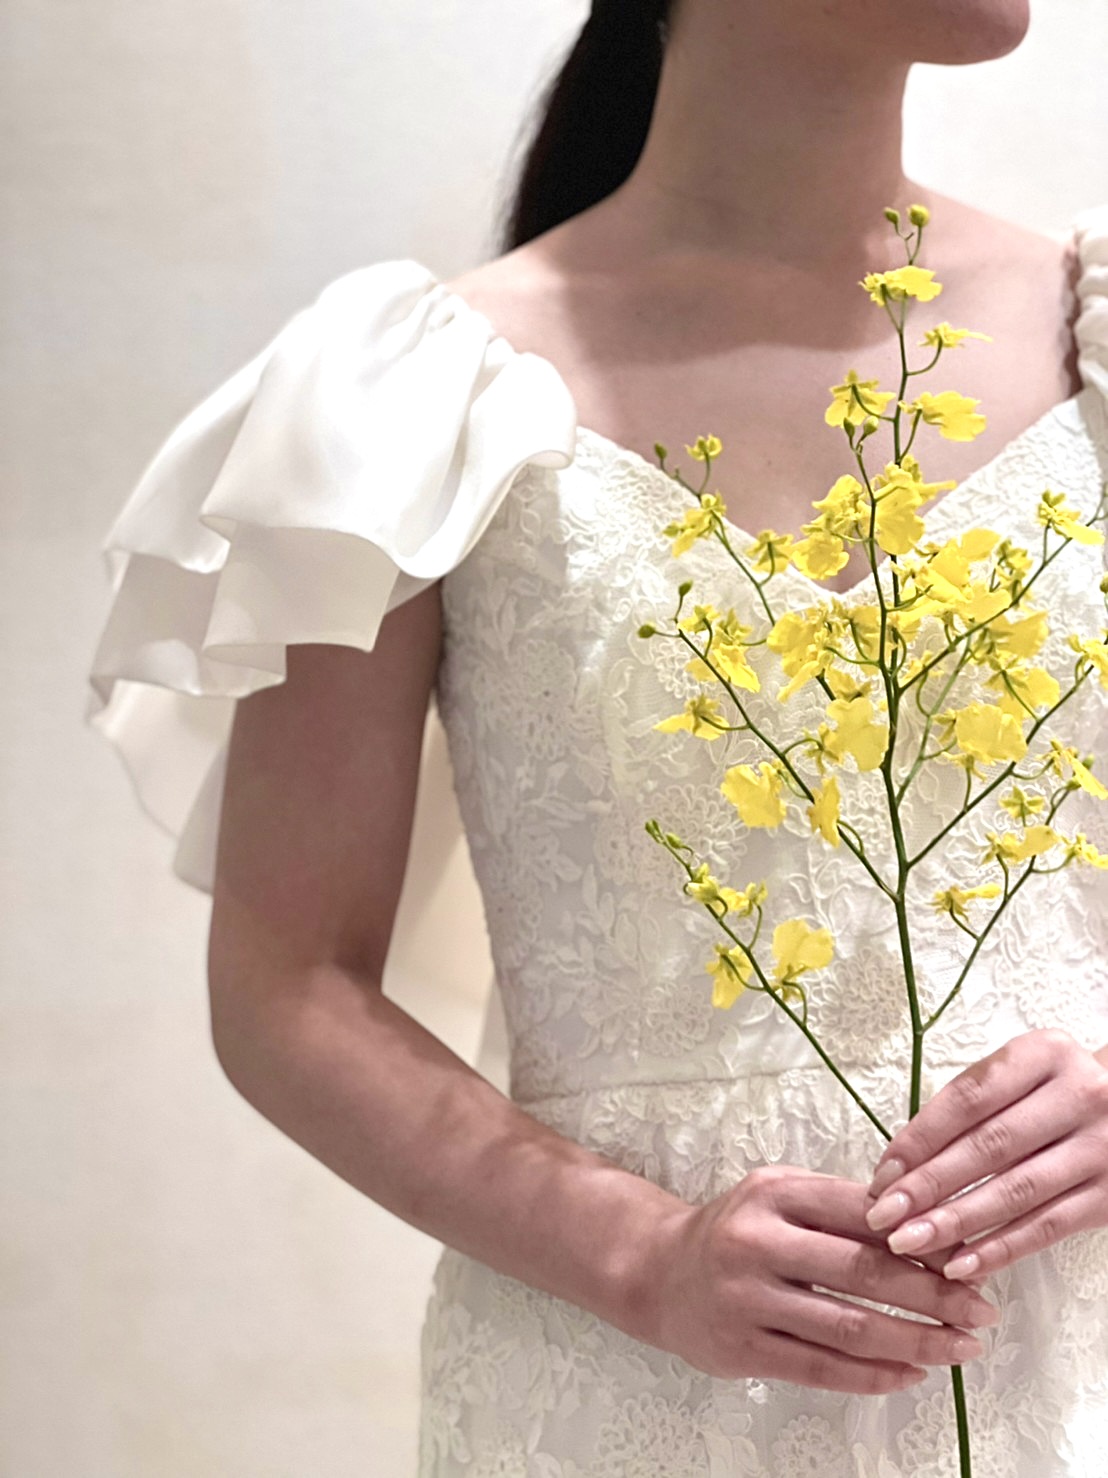 大注目のインポートブランドマルカリアンが日本初上のウエディングドレスが